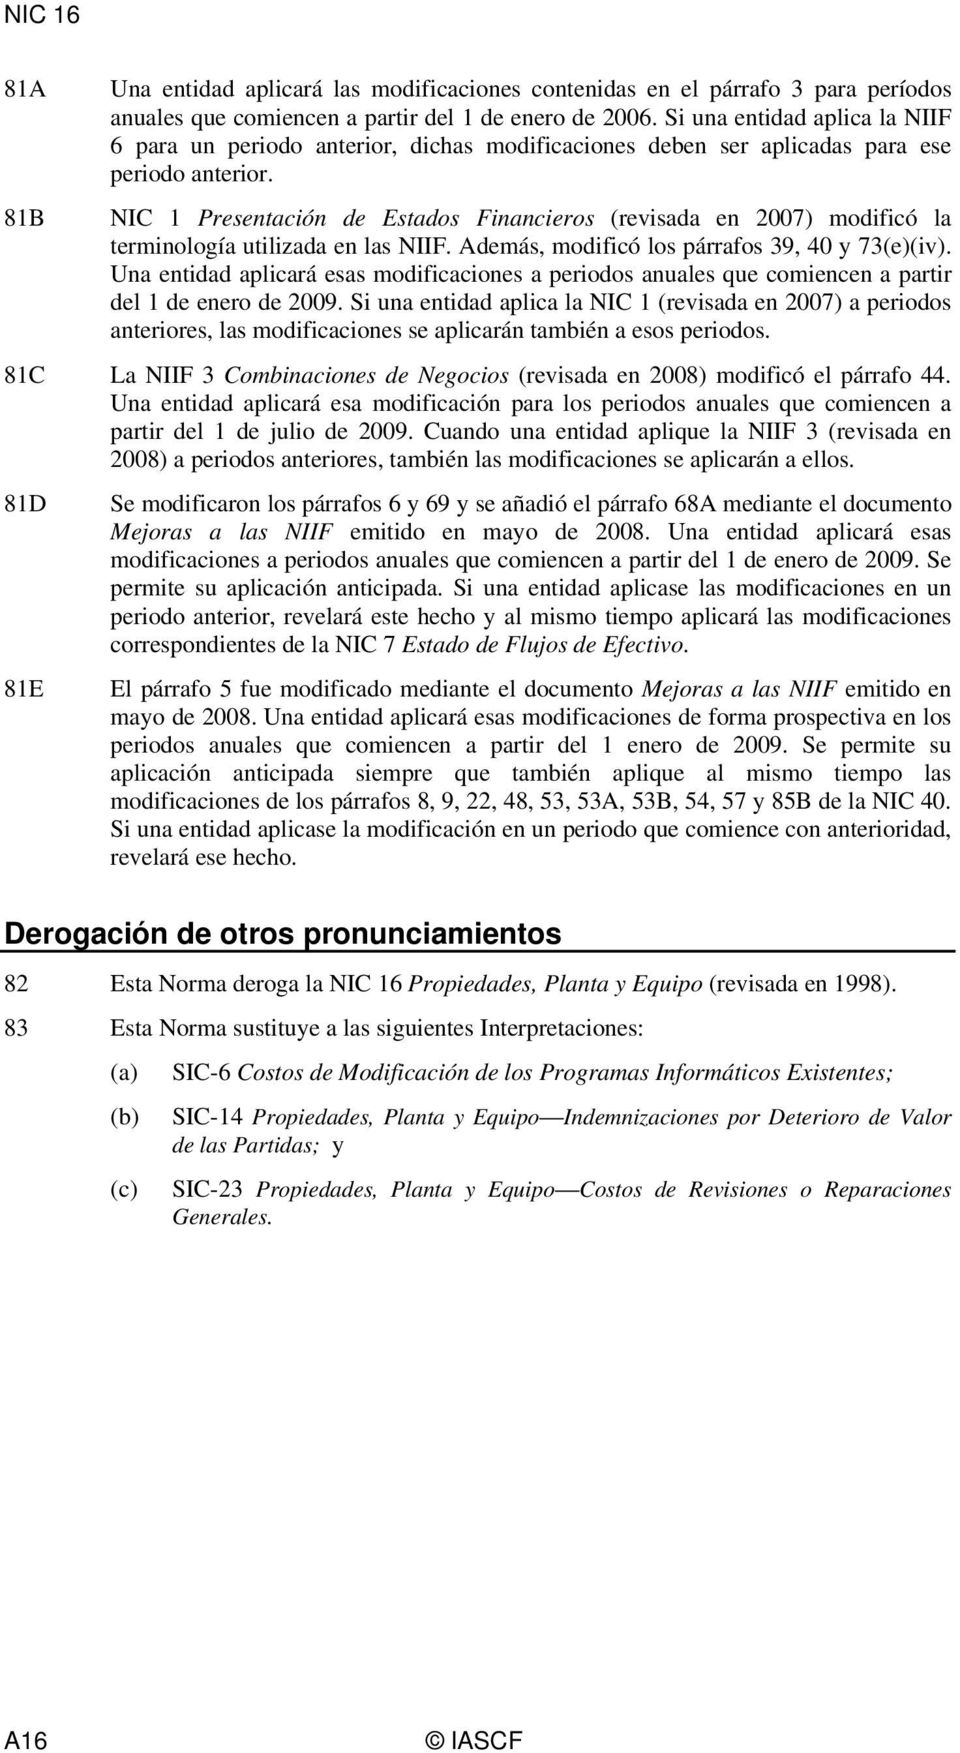 NIC 1 Presentación de Estados Financieros (revisada en 2007) modificó la terminología utilizada en las NIIF. Además, modificó los párrafos 39, 40 y 73(e)(iv).